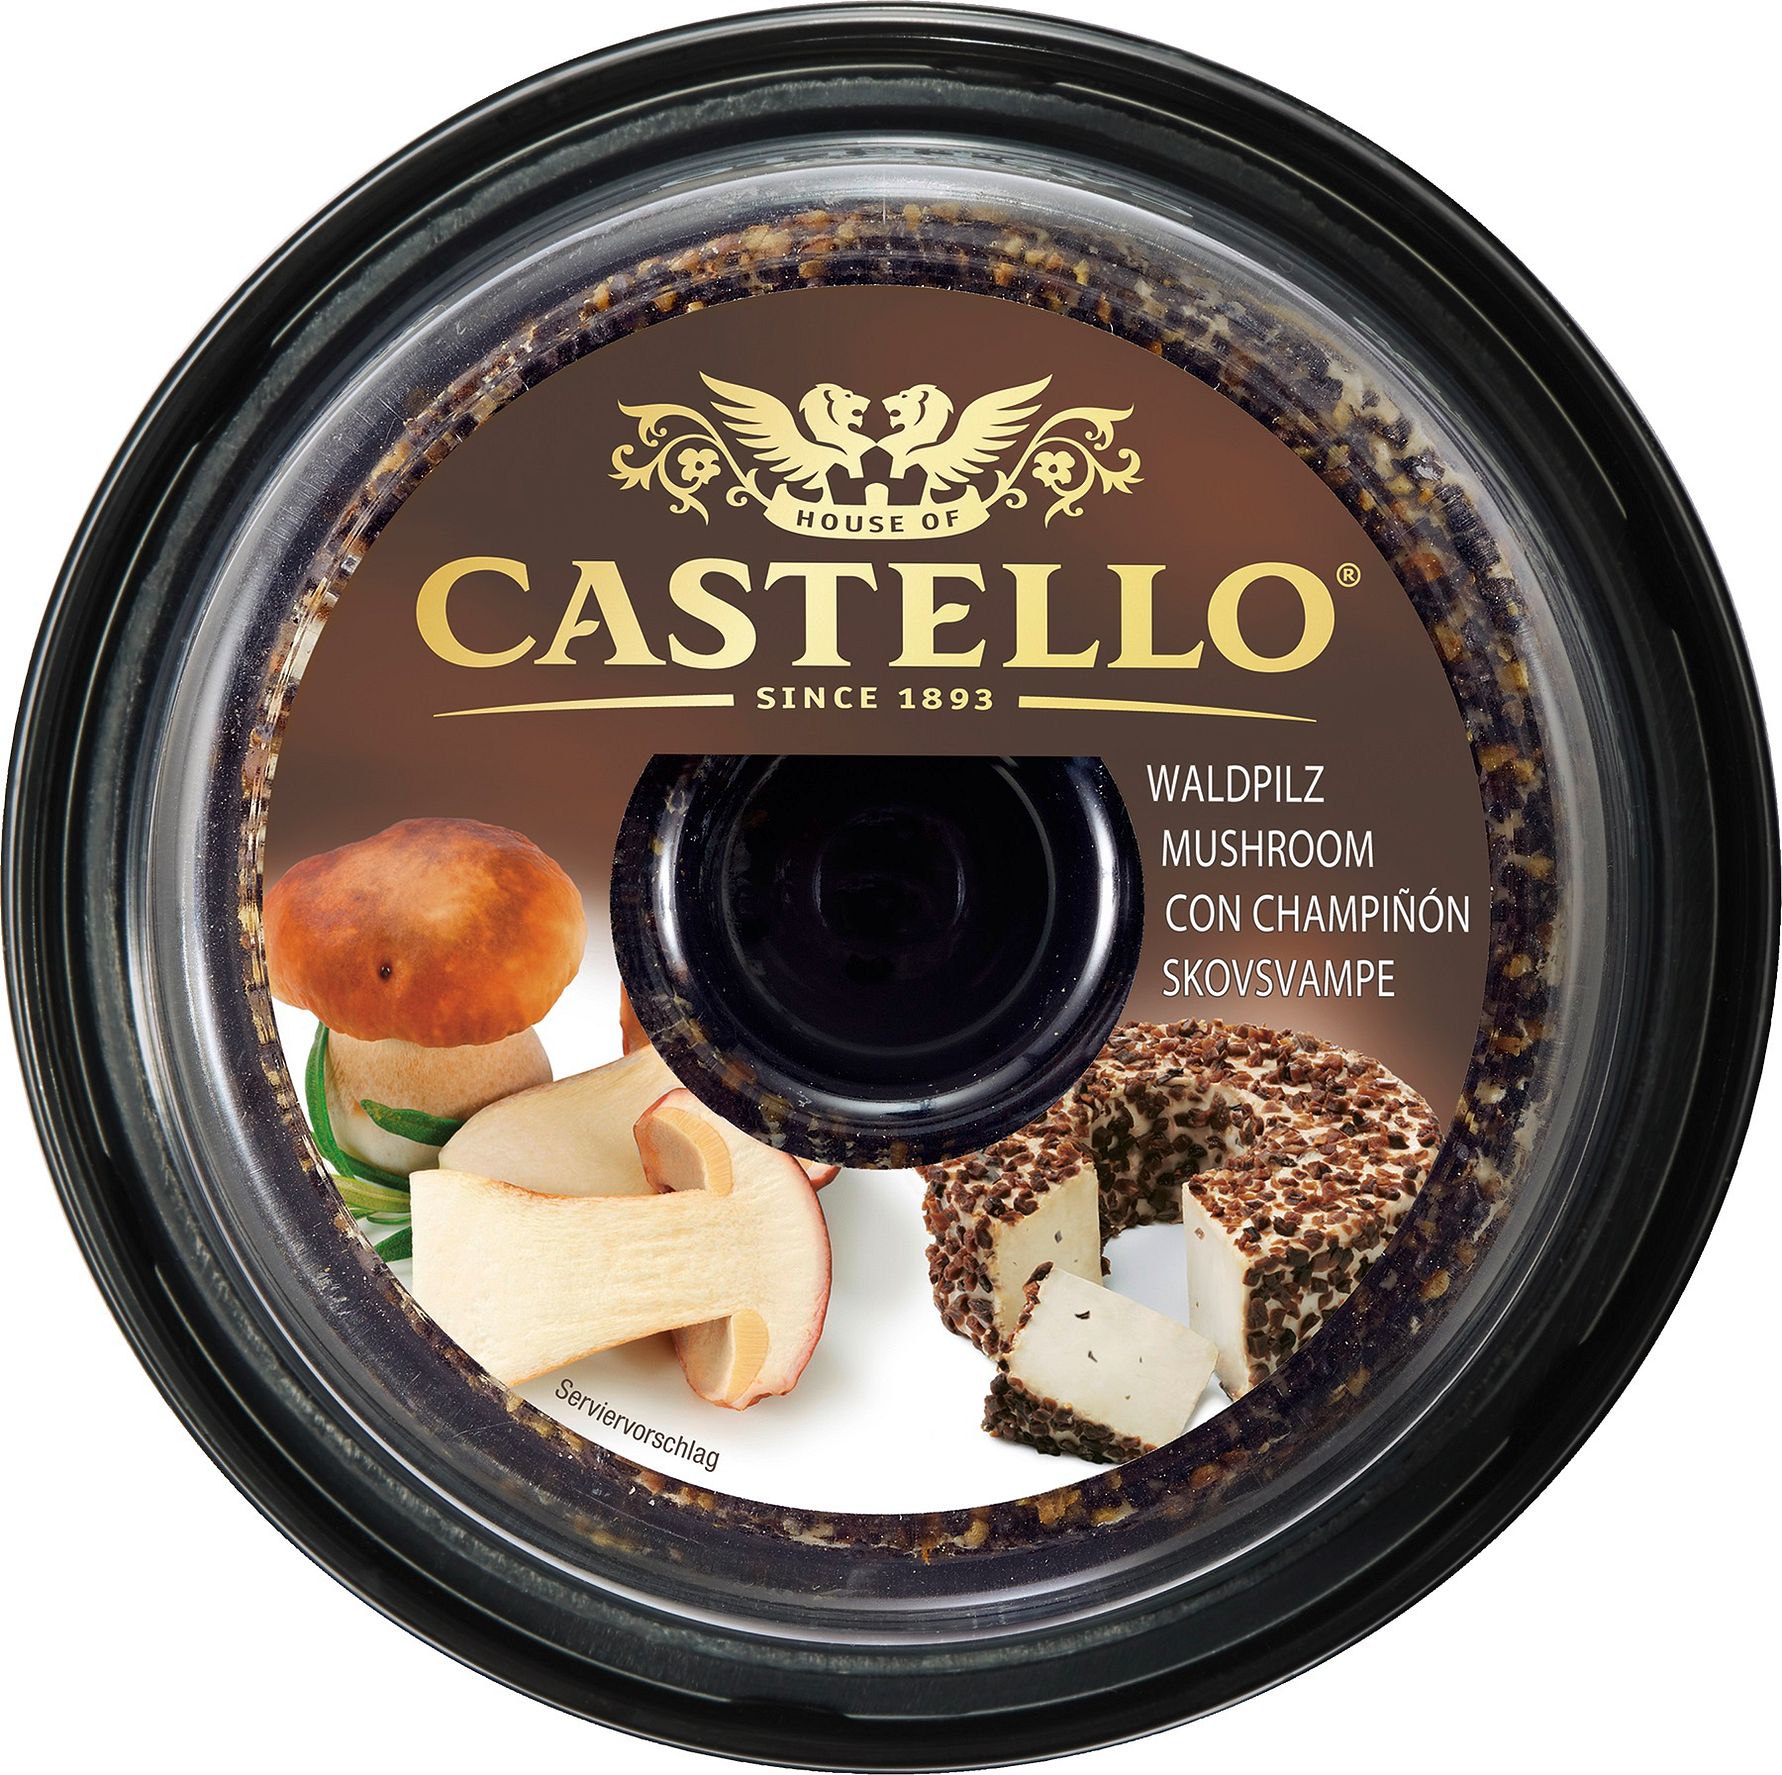 Castello® sorgt mit Saisonkonzept  für neue Impulse im Frischkäse-Segment